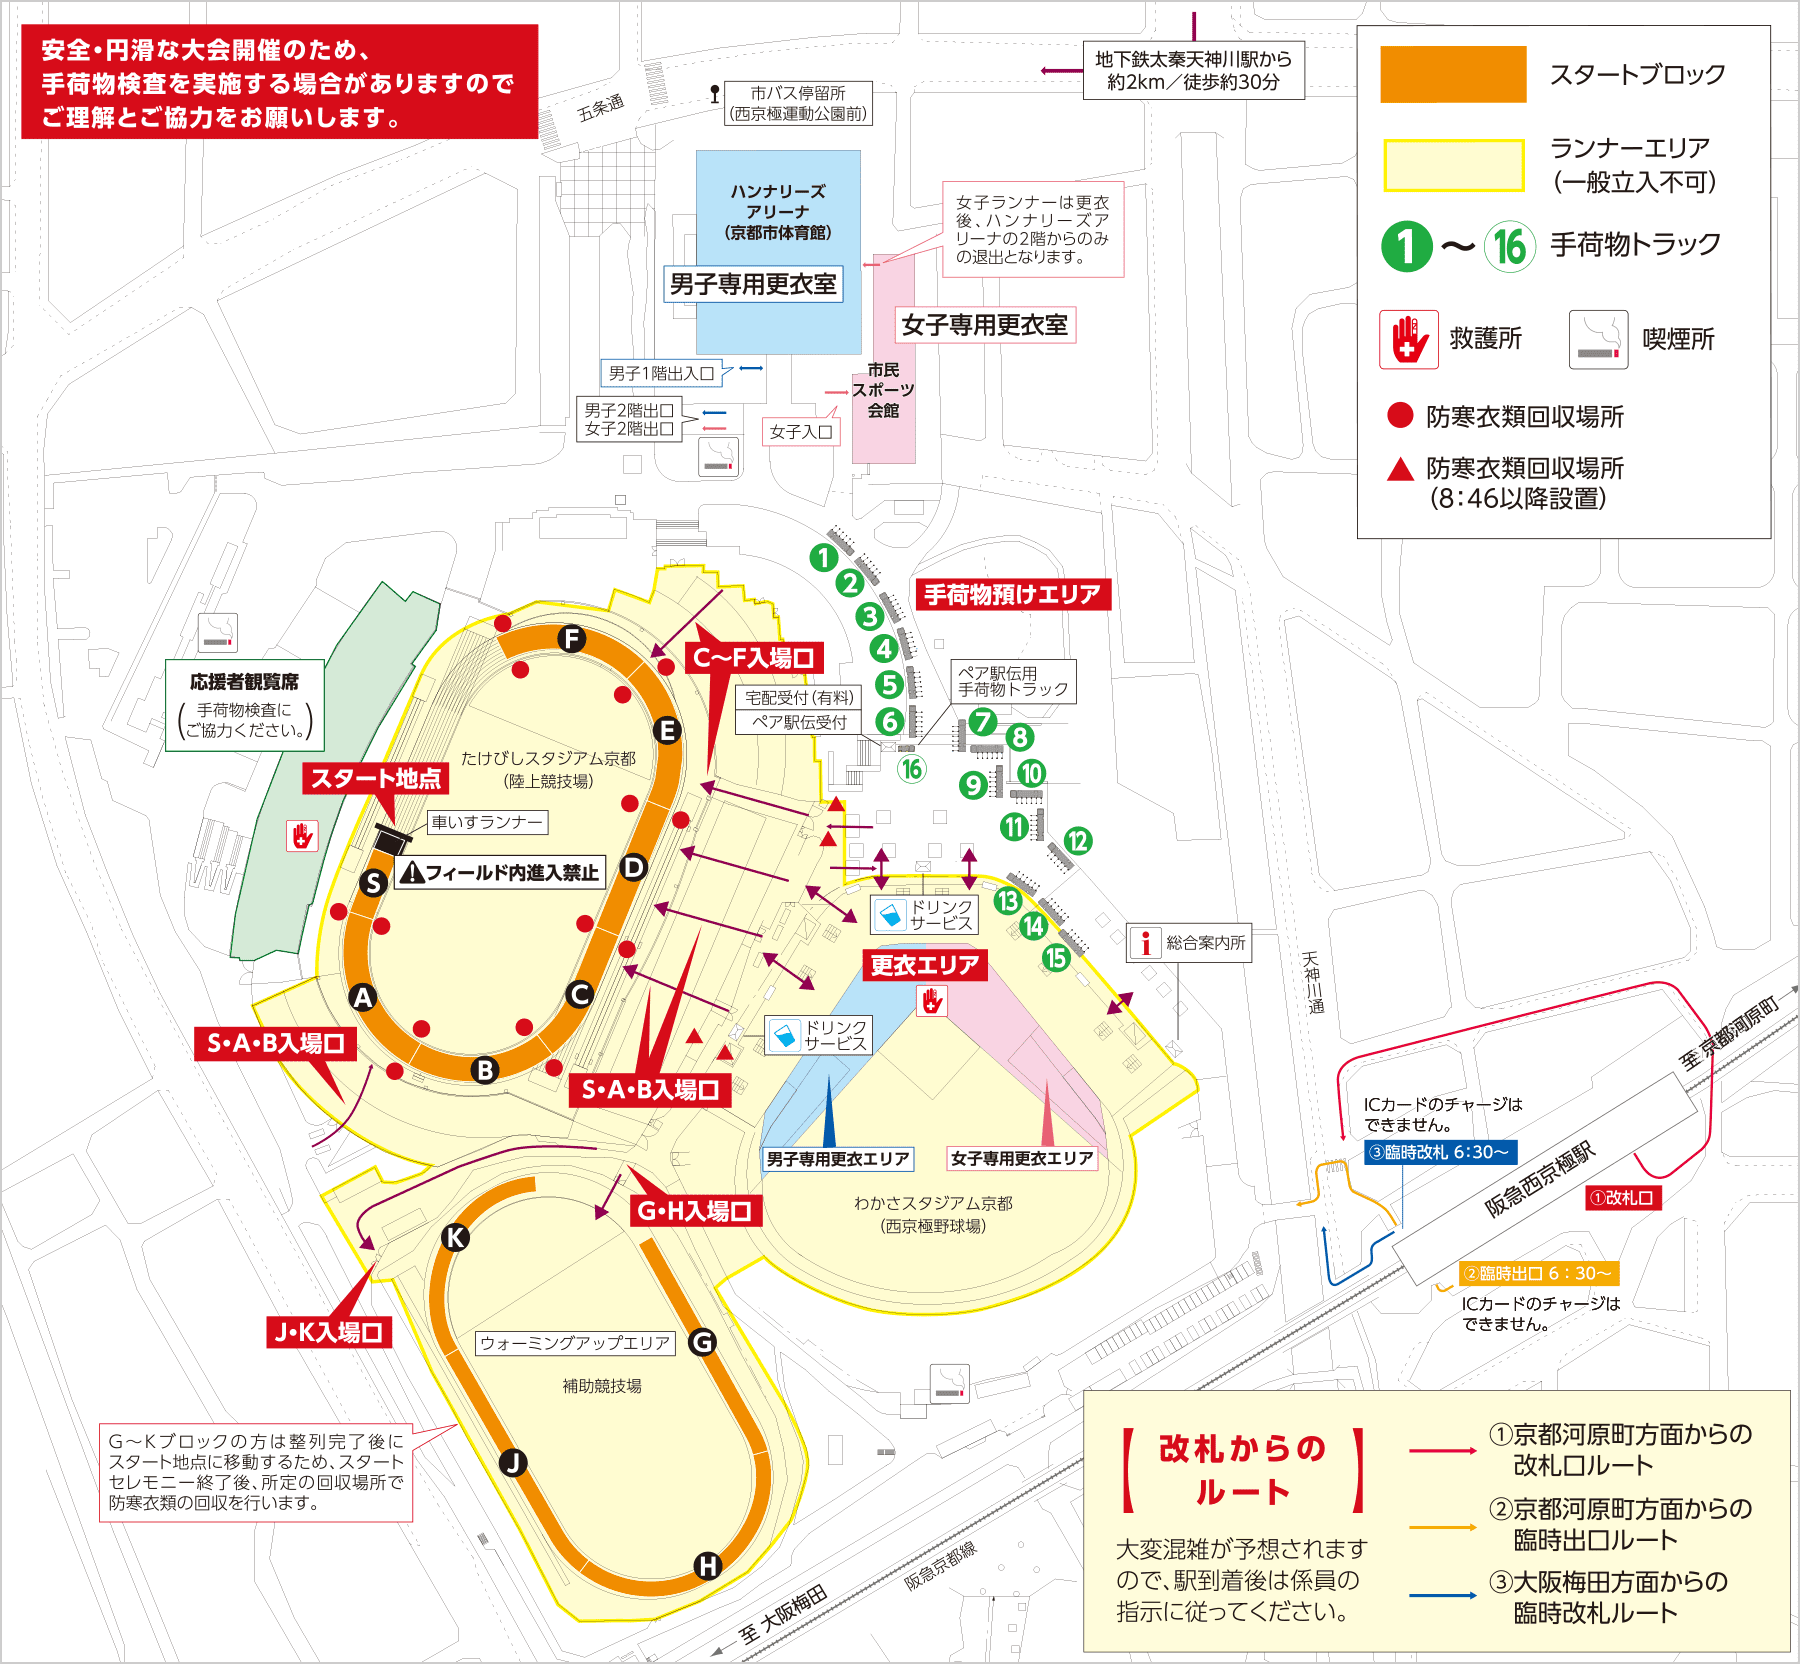 京都マラソン2020 スタート会場の地図